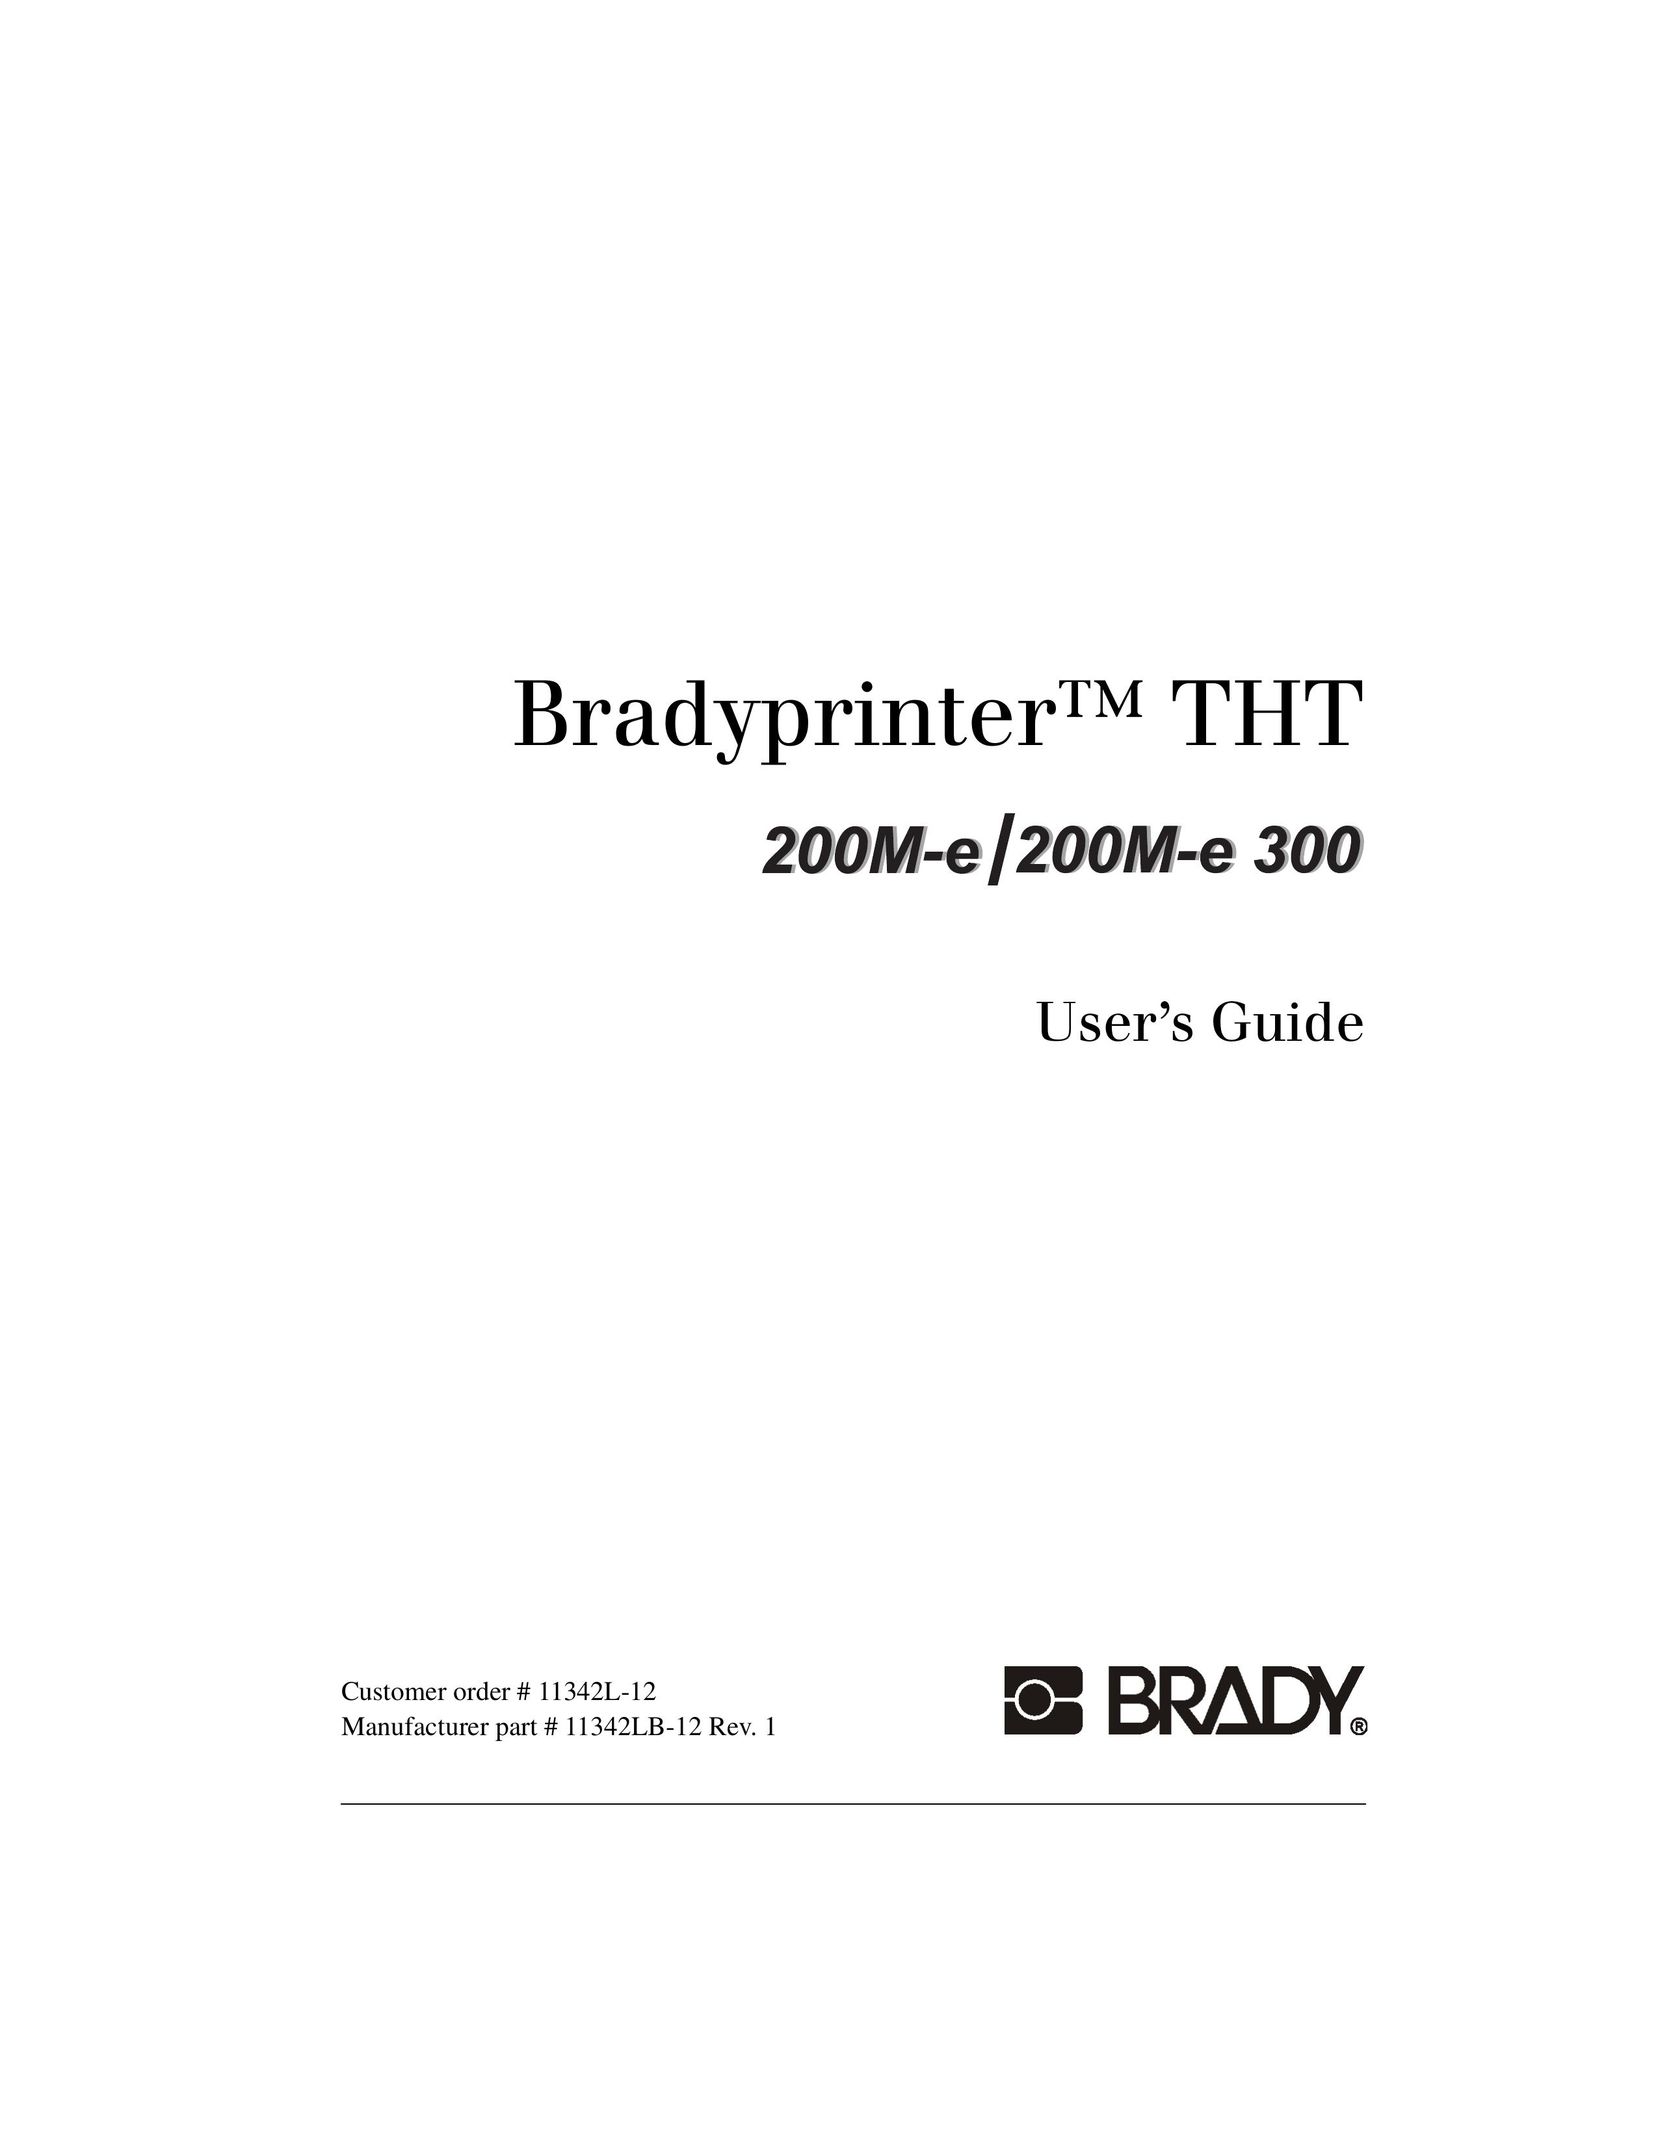 Brady 200M-e Printer User Manual